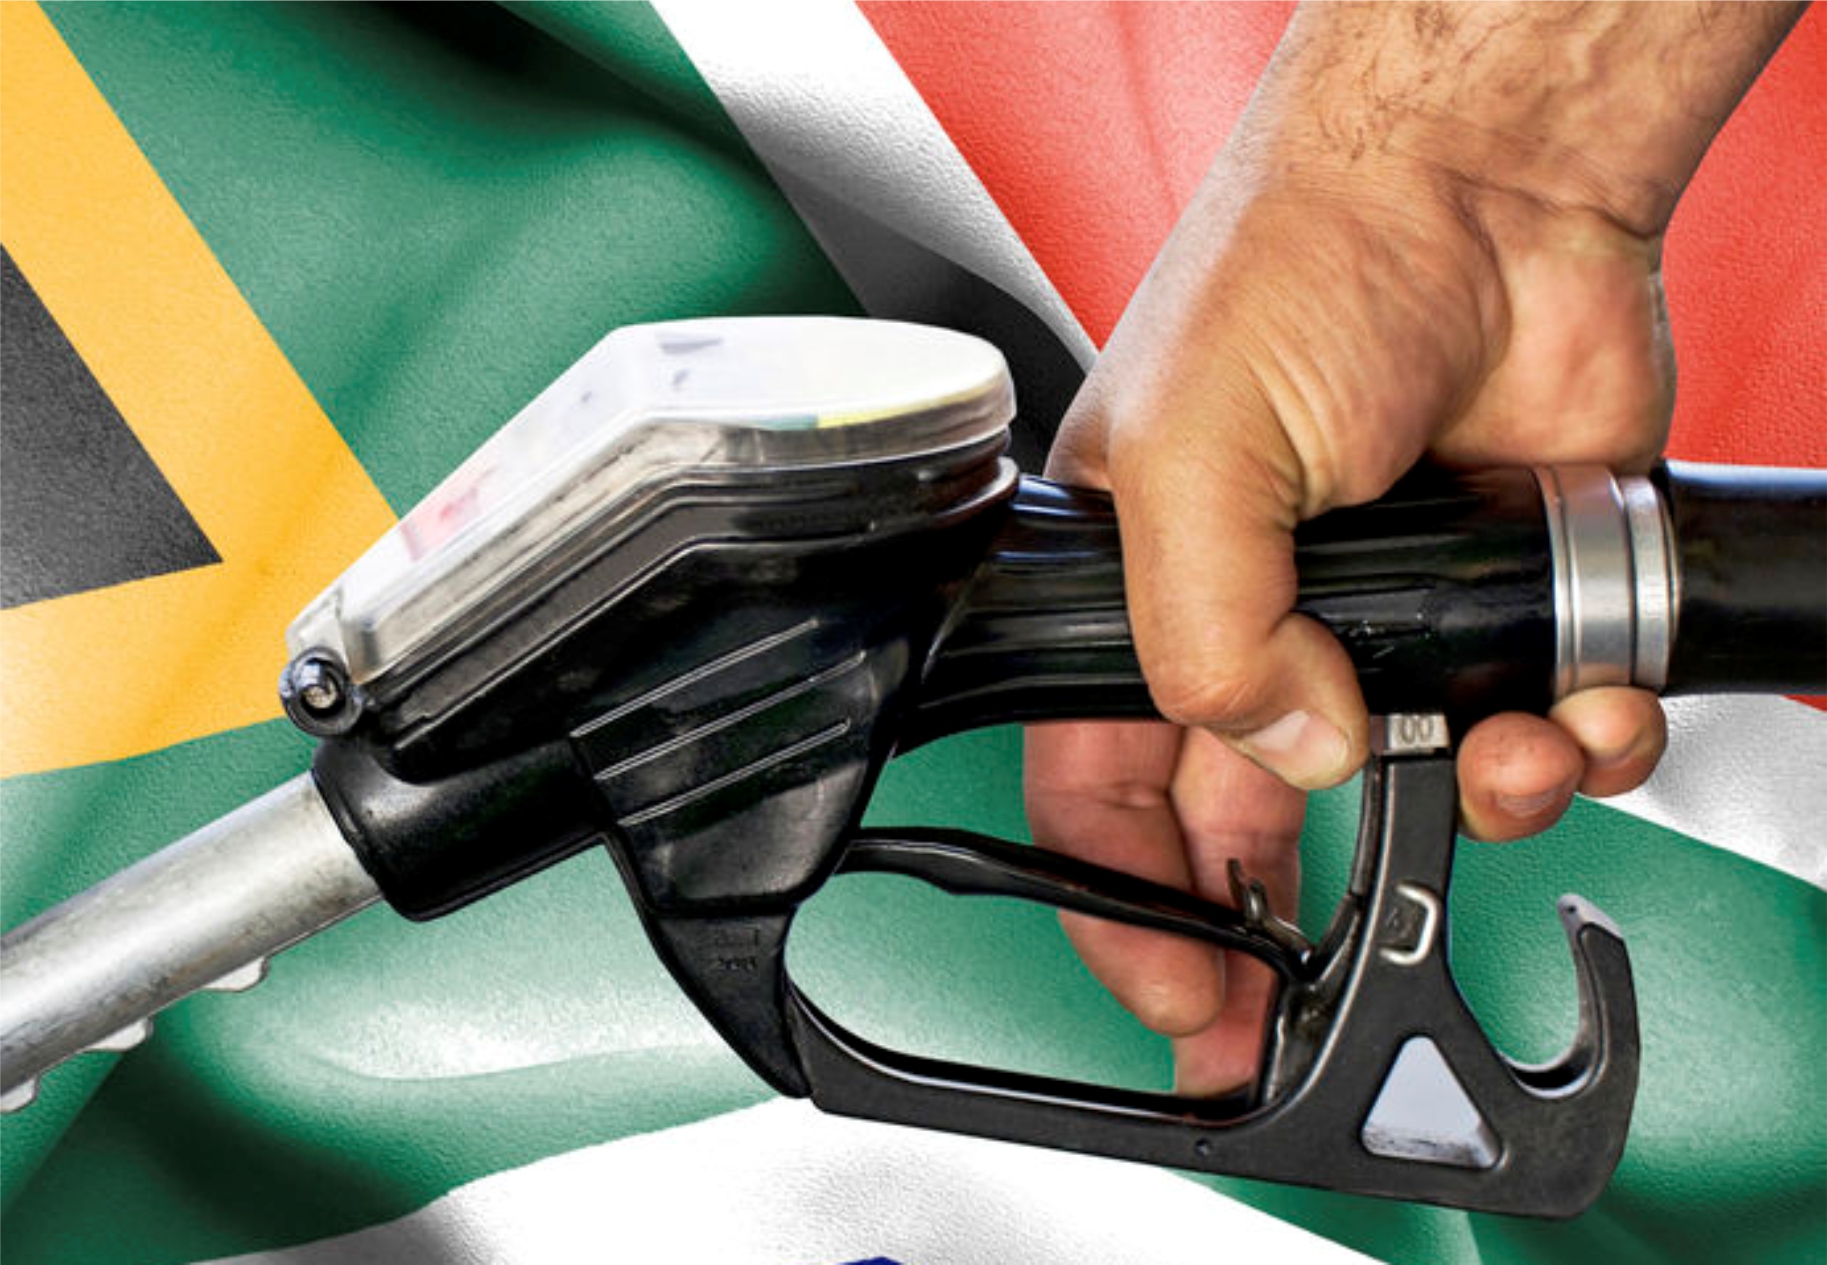 Africa’s energy future: Cape Town versus Dubai